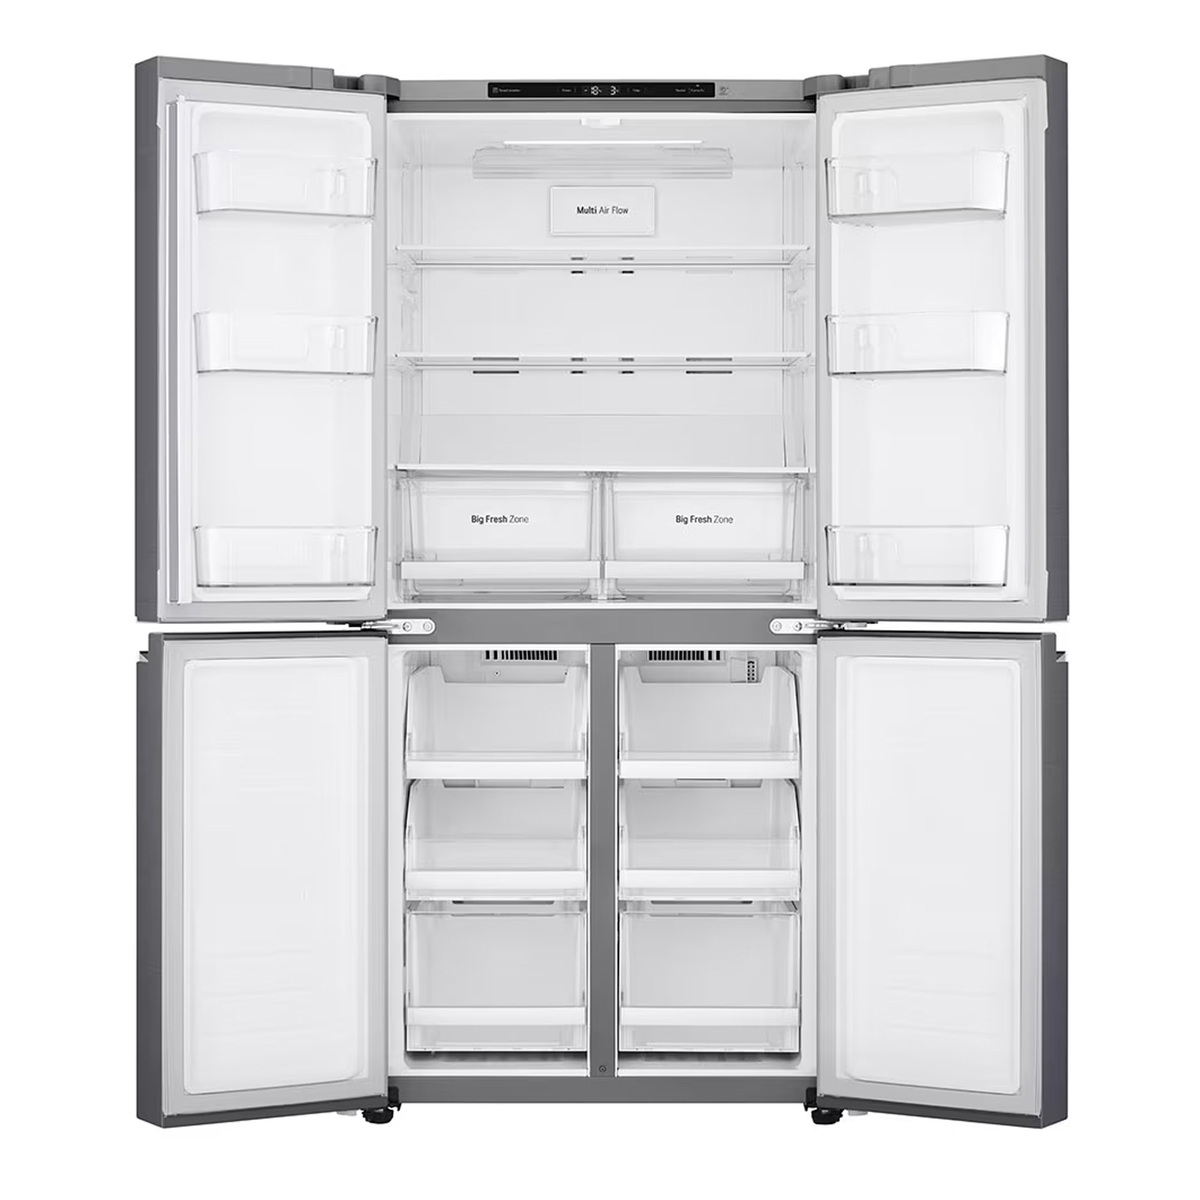 LG French Door Refrigerator, 464 L, Silver, GR-B29FTLVB